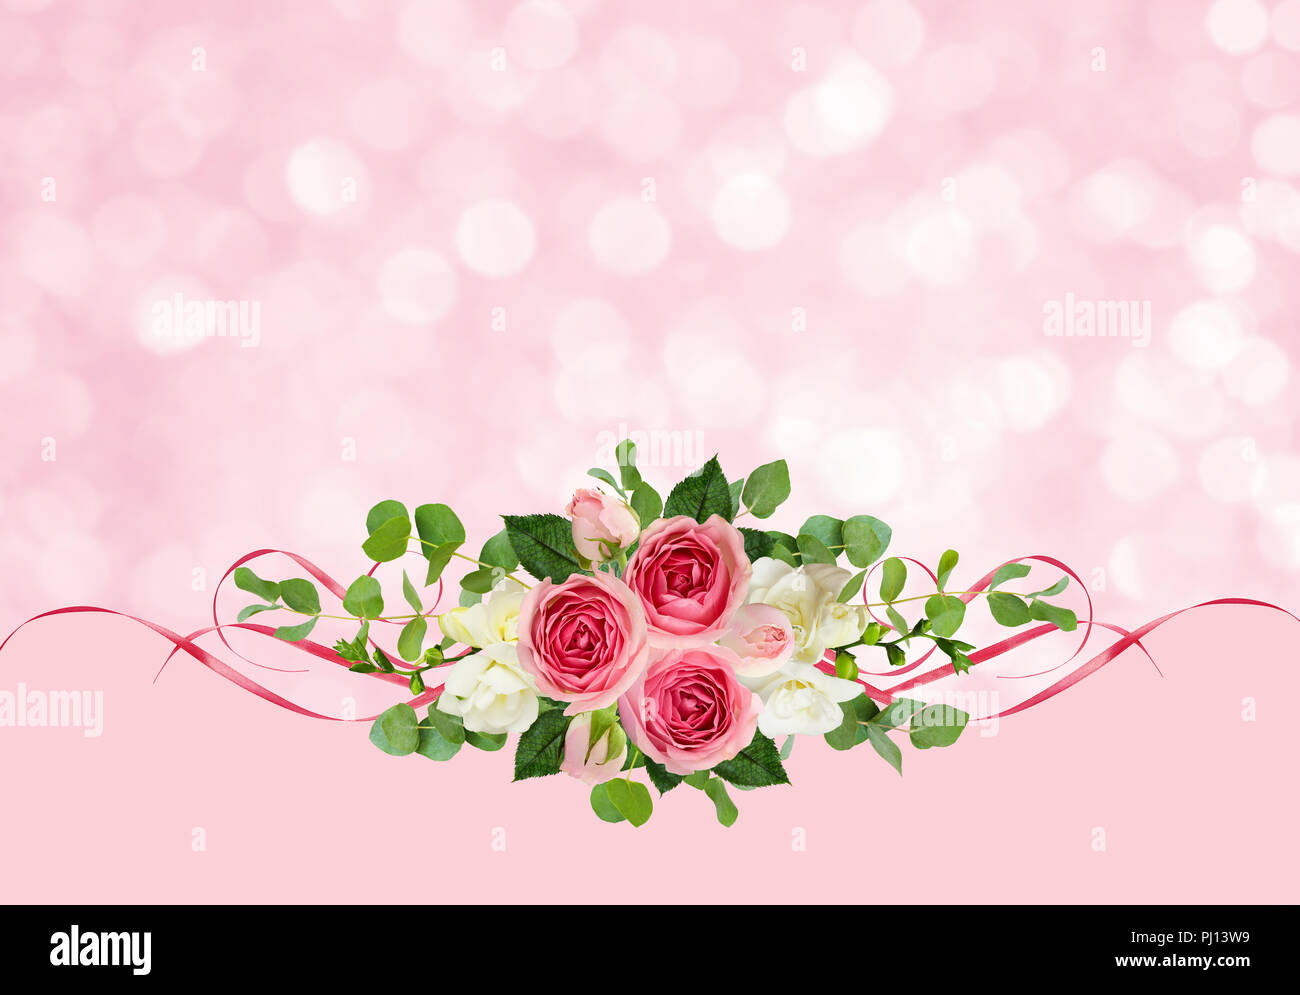 Freesie rosa Rosen, Blumen, Eukalyptus Blätter und satin Bänder auf Urlaub Hintergrund Stockfoto